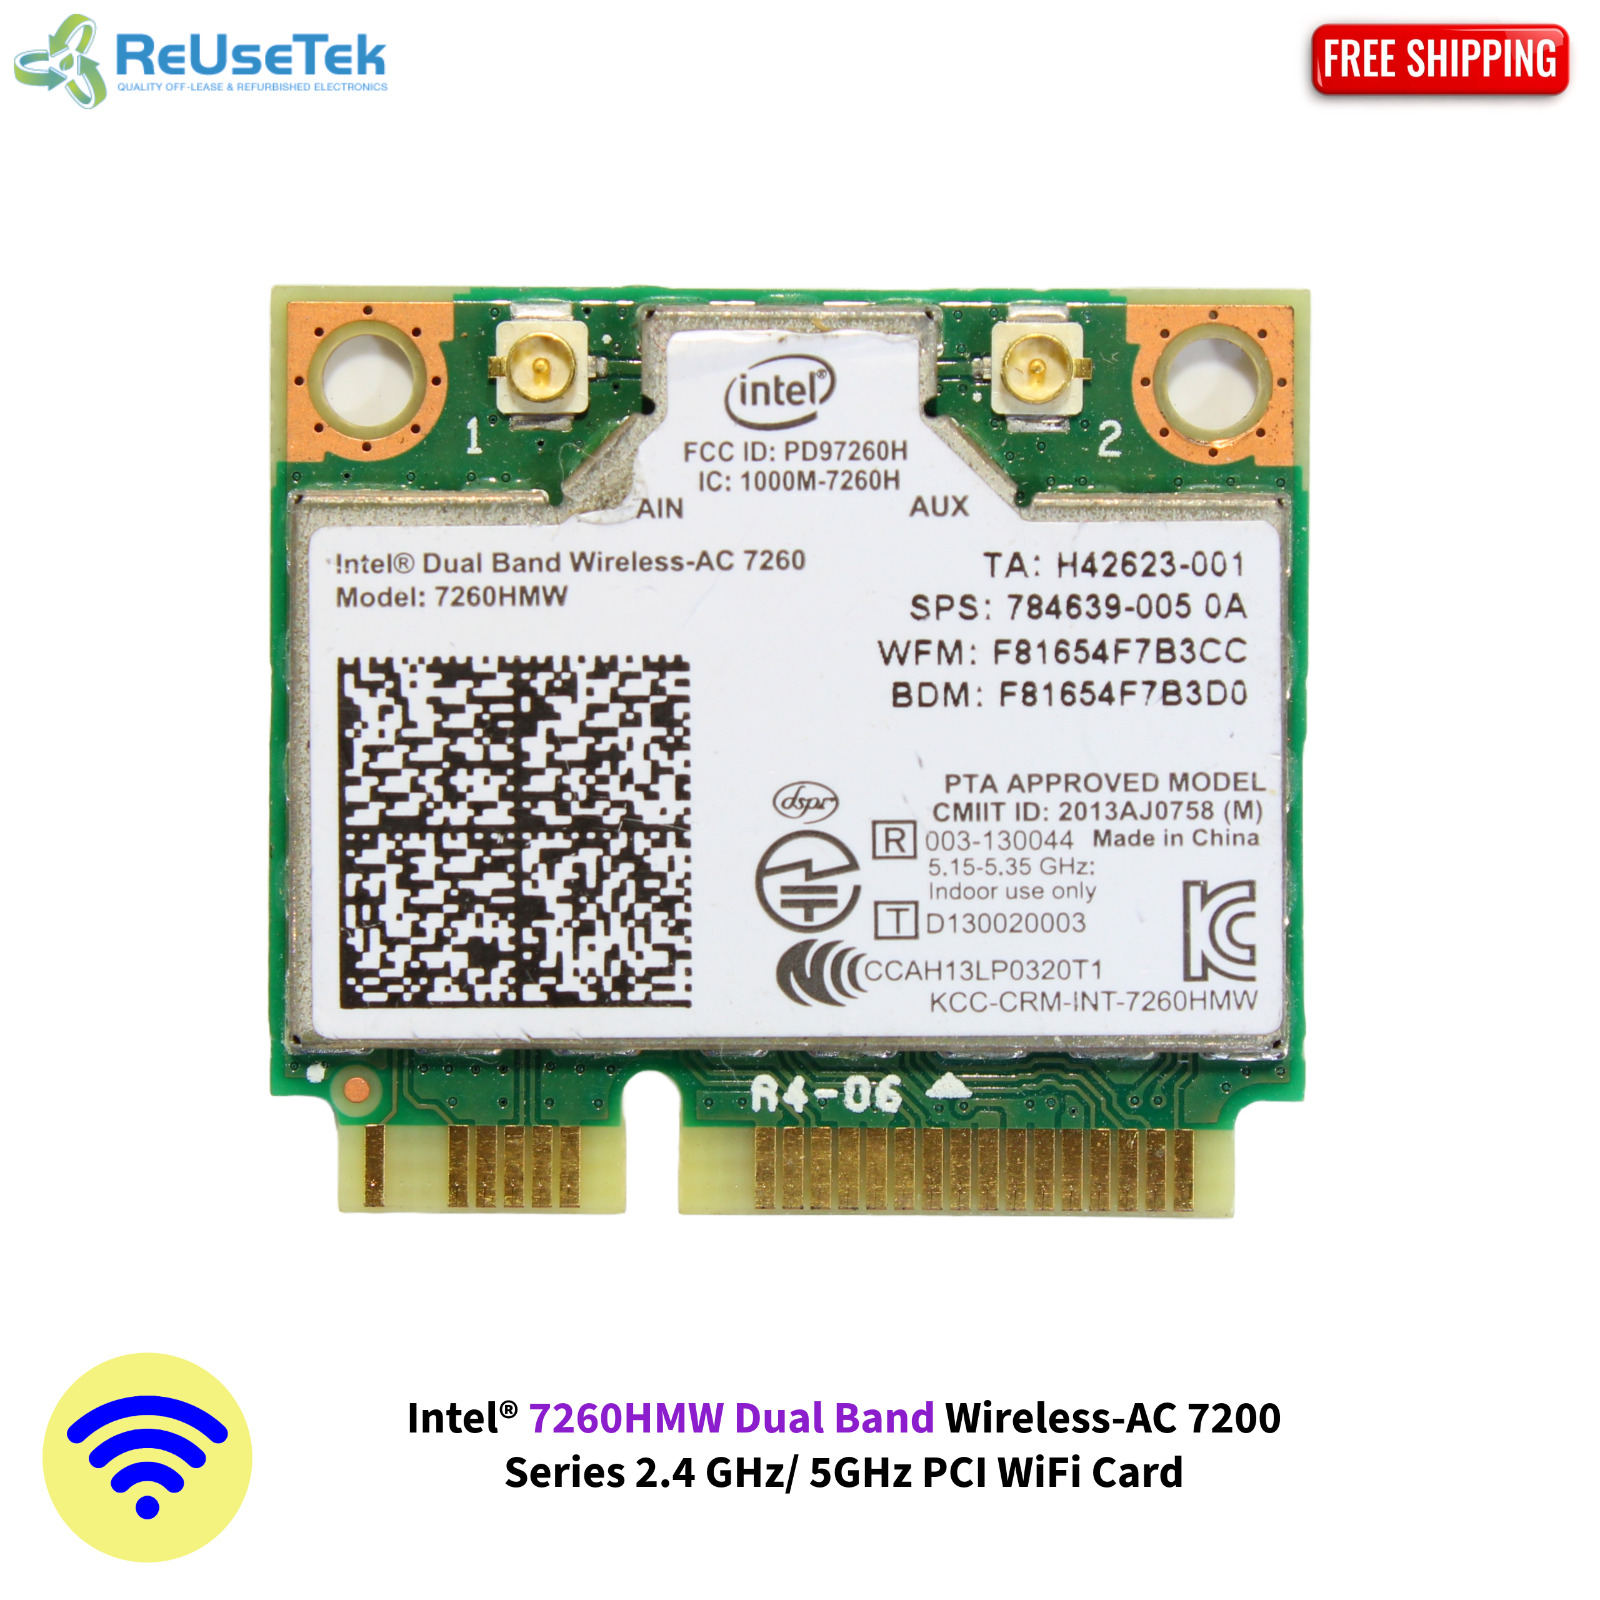 Intel® 7260HMW Dual Band Wireless-AC 7200 Series 2.4 GHz/ 5GHz PCI WiFi Card